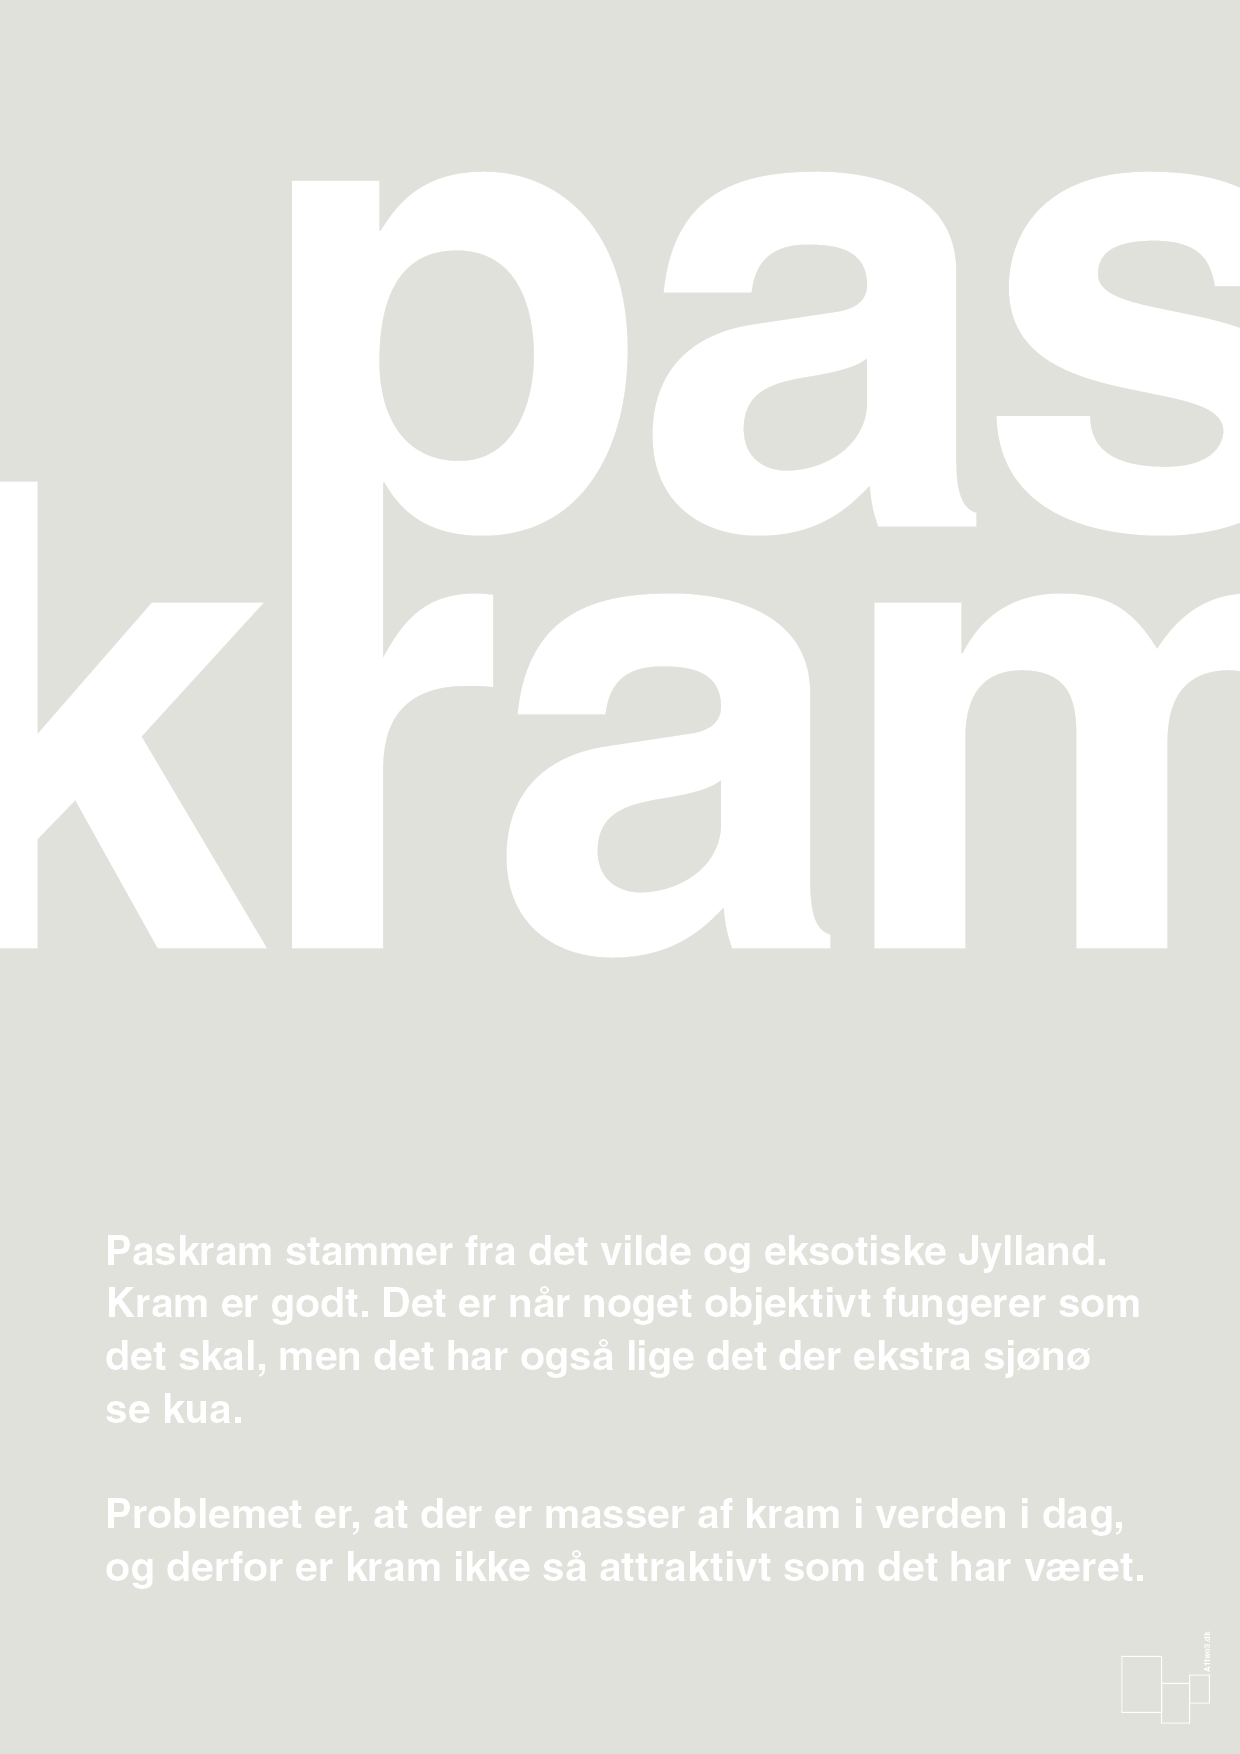 paskram - Plakat med Ord i Painters White